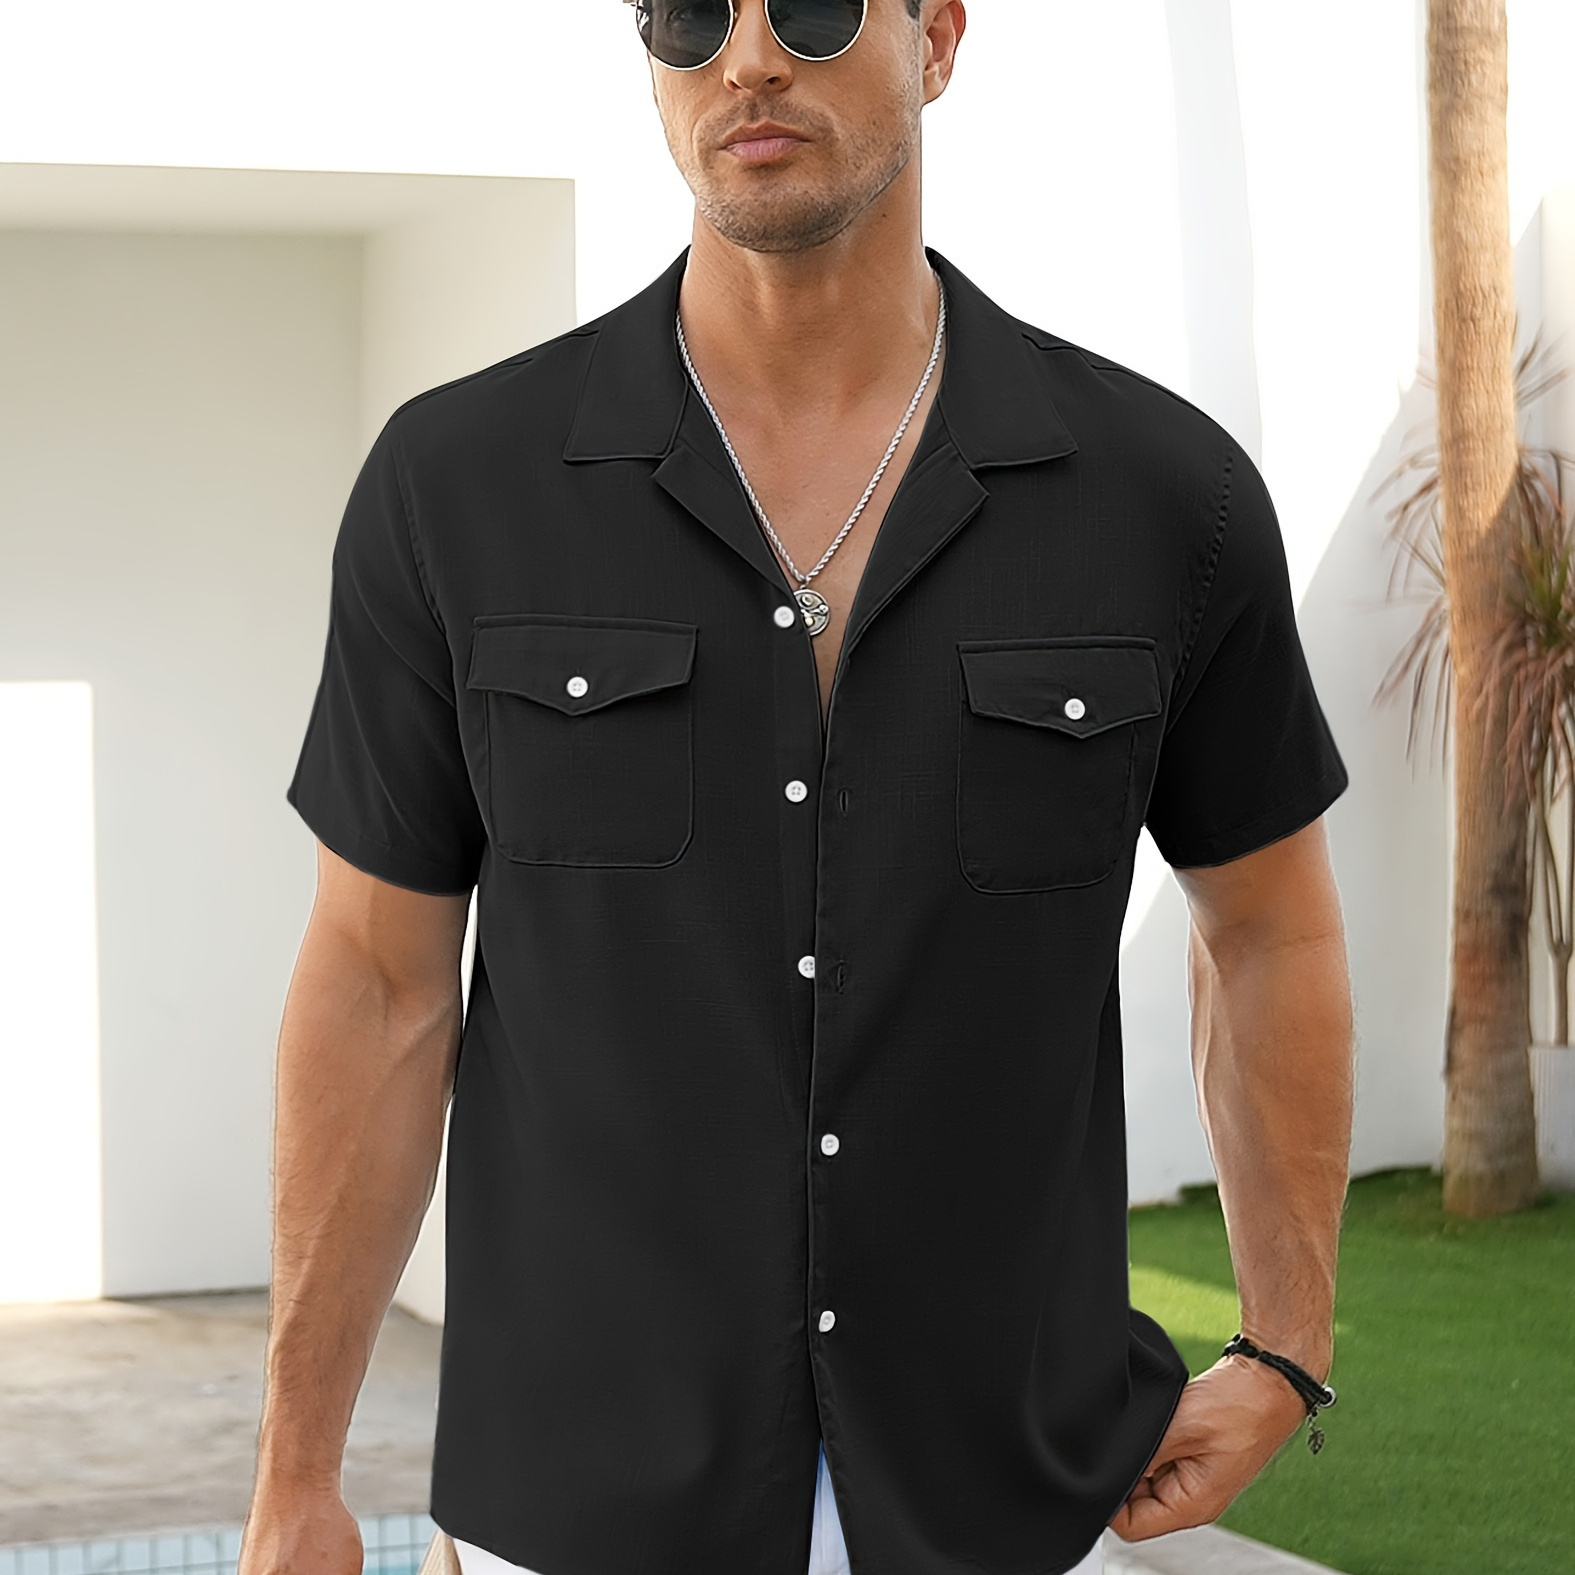 

Men's Linen Short Sleeve Button Down Shirt Casual Cuban Collar Summer Beach Shirts Vacation Essentials